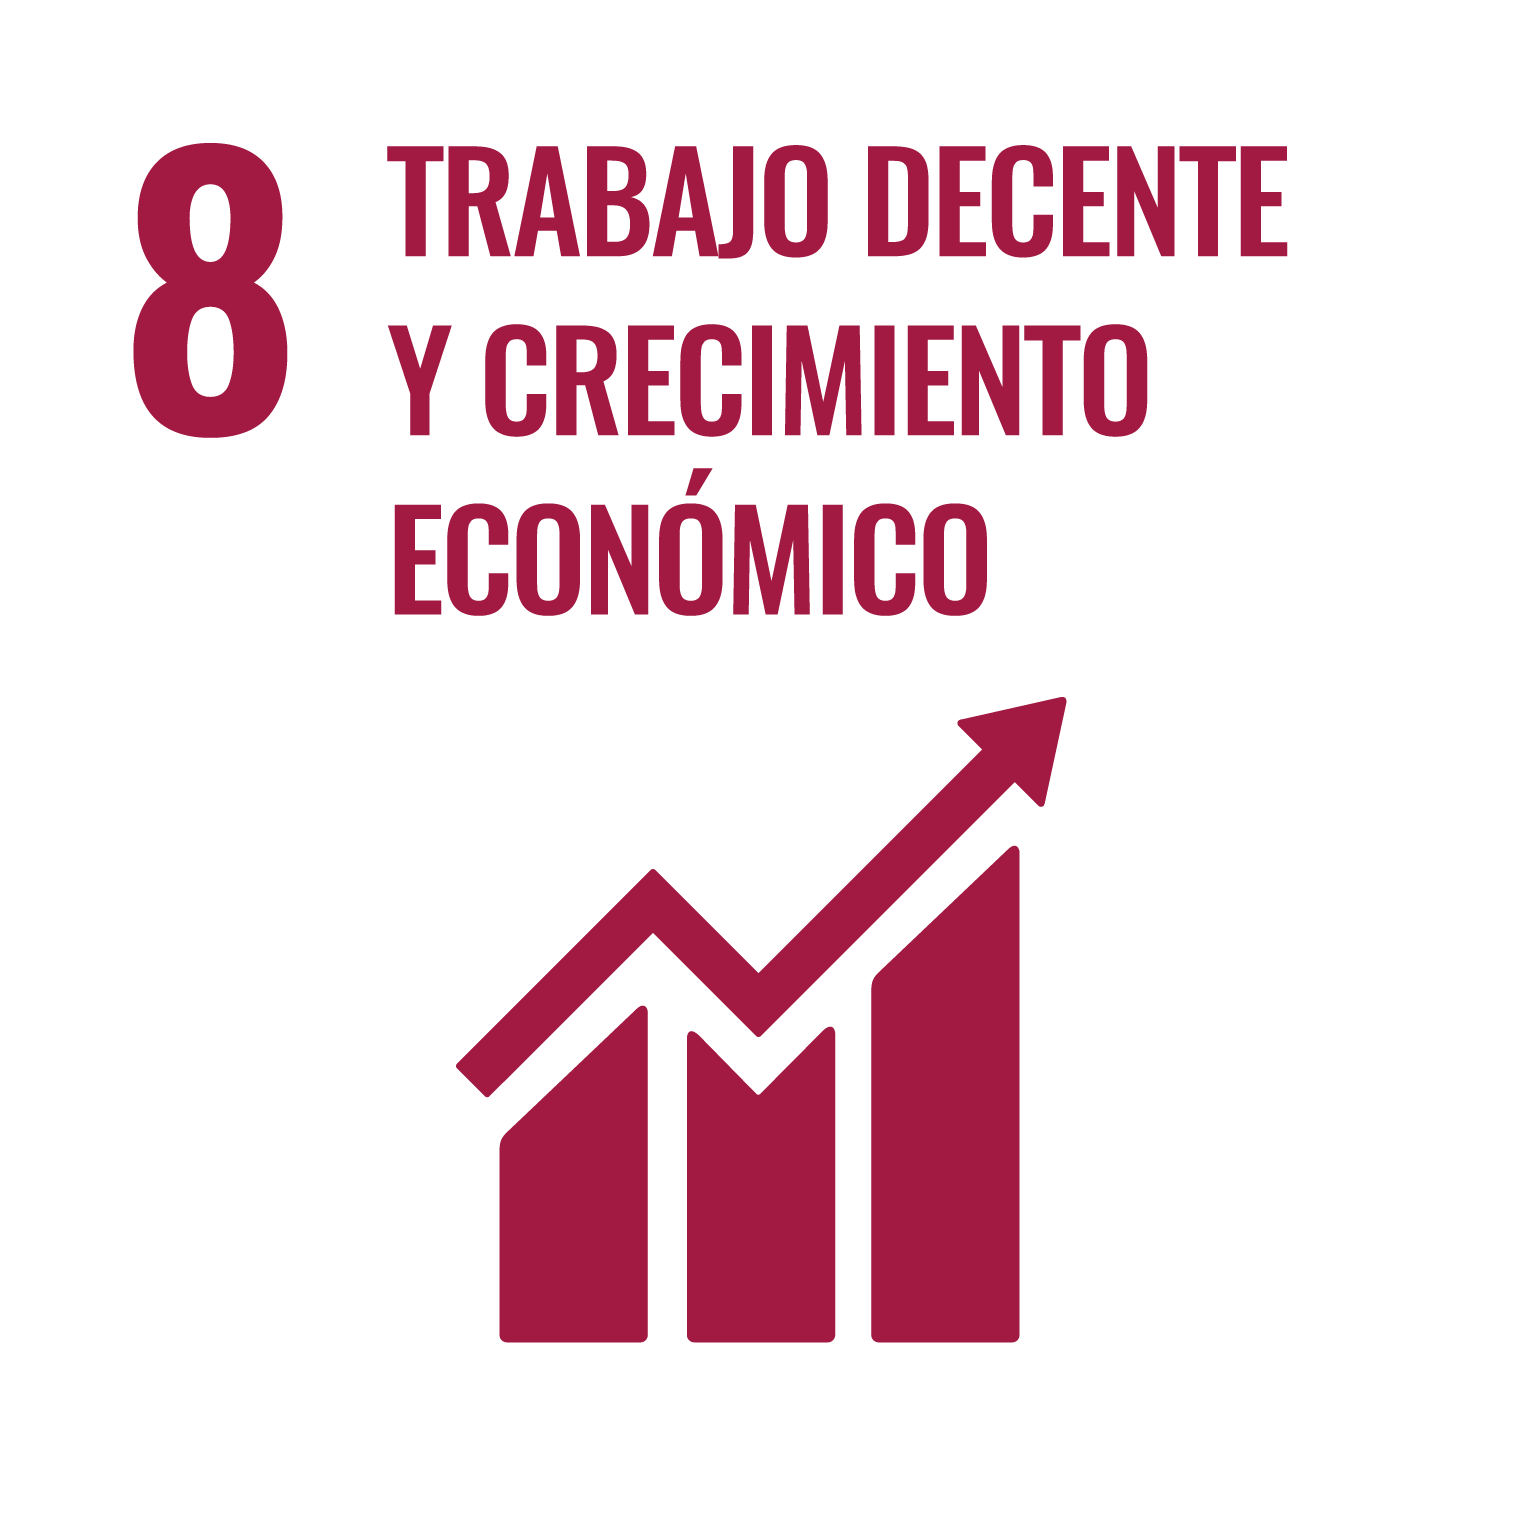 <p>Objetivo 8: Promover el crecimiento económico inclusivo y sostenible, el empleo y el trabajo decente para todos</p>
